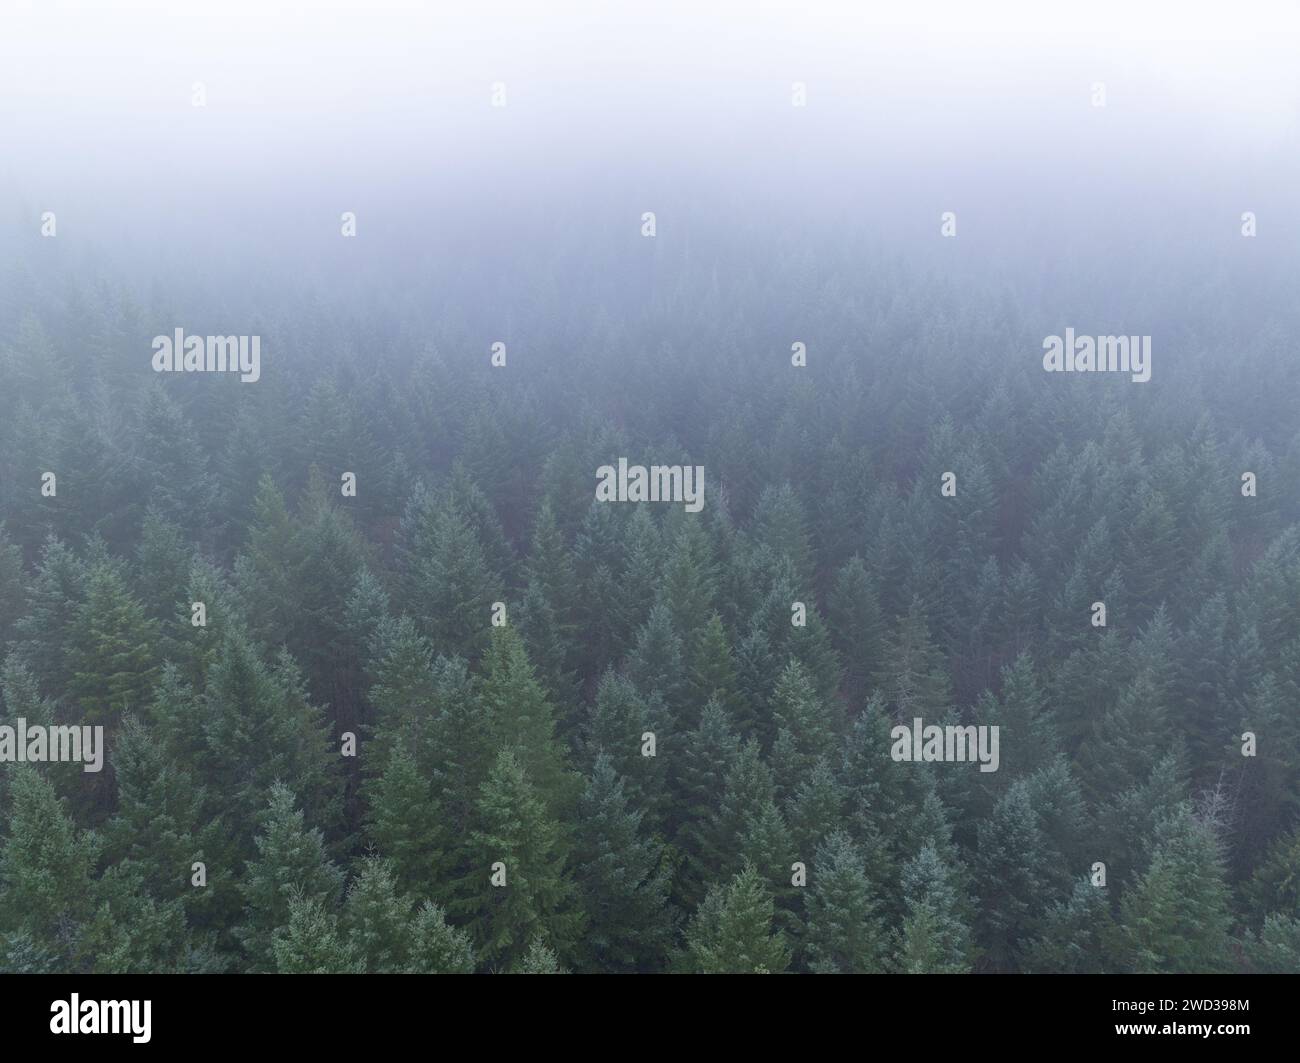 La nebbia scorre attraverso una foresta del Pacifico nord-occidentale a ovest di Portland, Oregon. Questa regione degli Stati Uniti ospita vaste foreste, montagne e fiumi. Foto Stock